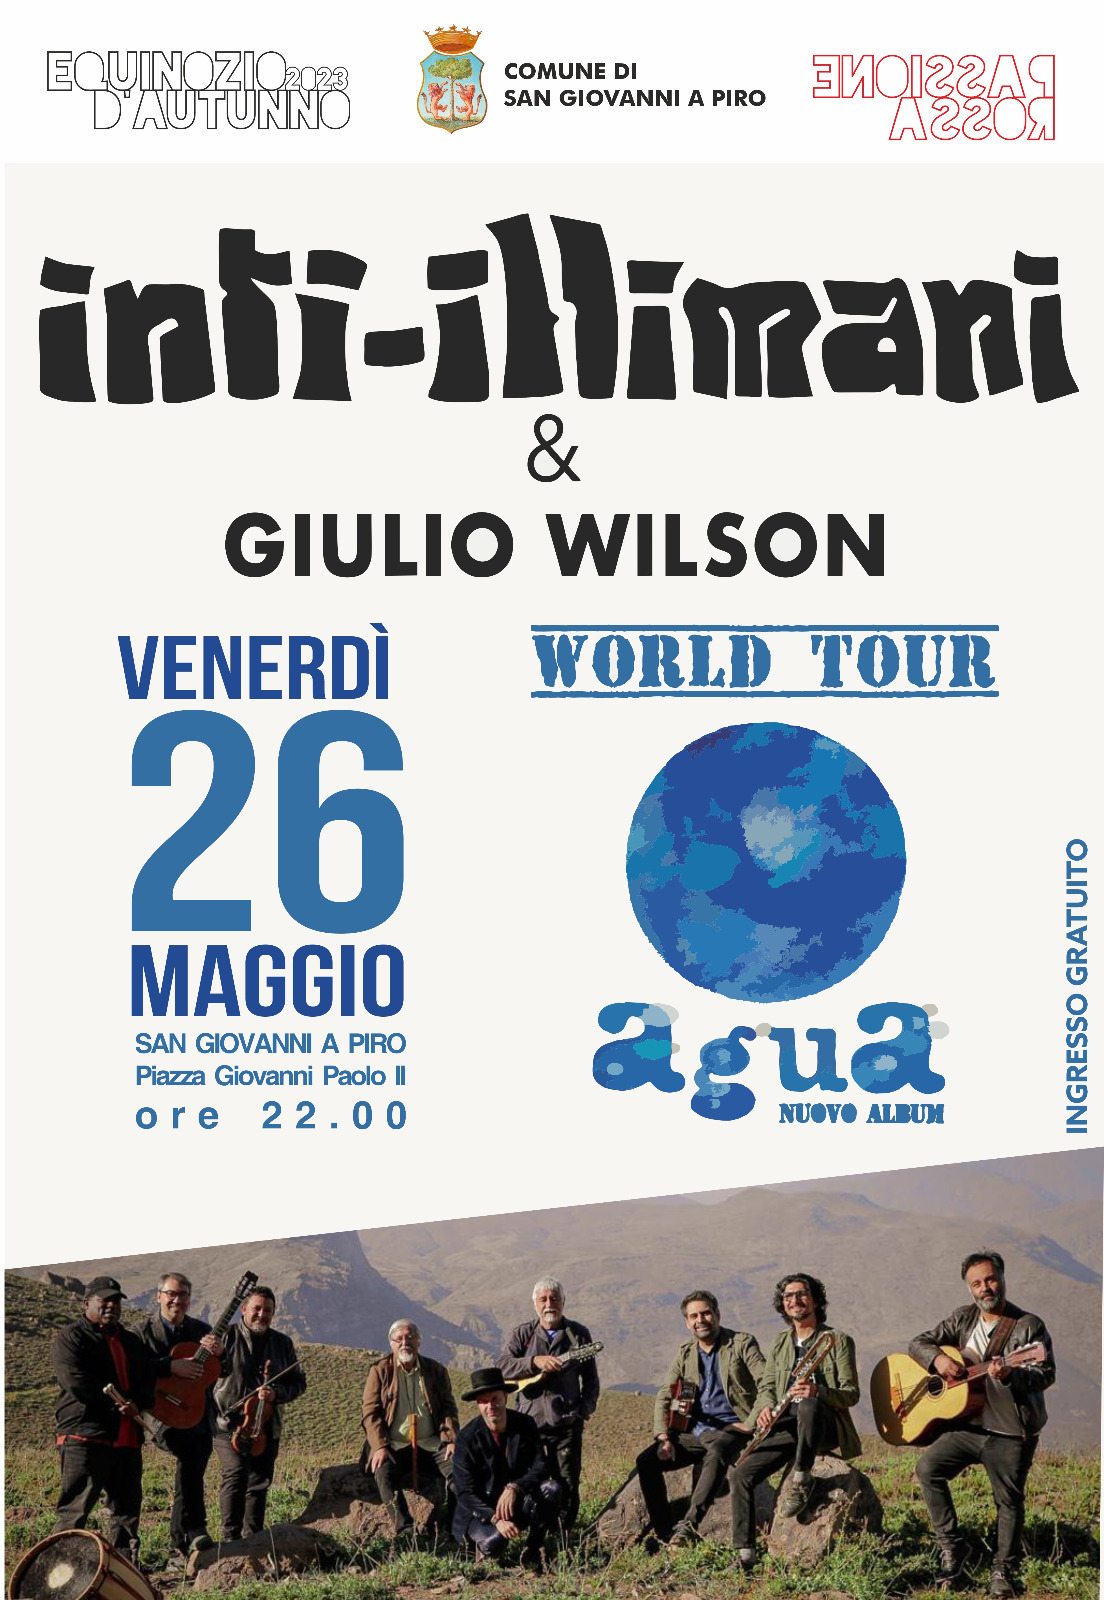 San Giovanni a Piro: Musica, gruppo cileno Inti-Illimani nella terra che ha ospitato Ortega, concerto gratuito,  Agua World Tour con Giulio Wilson 